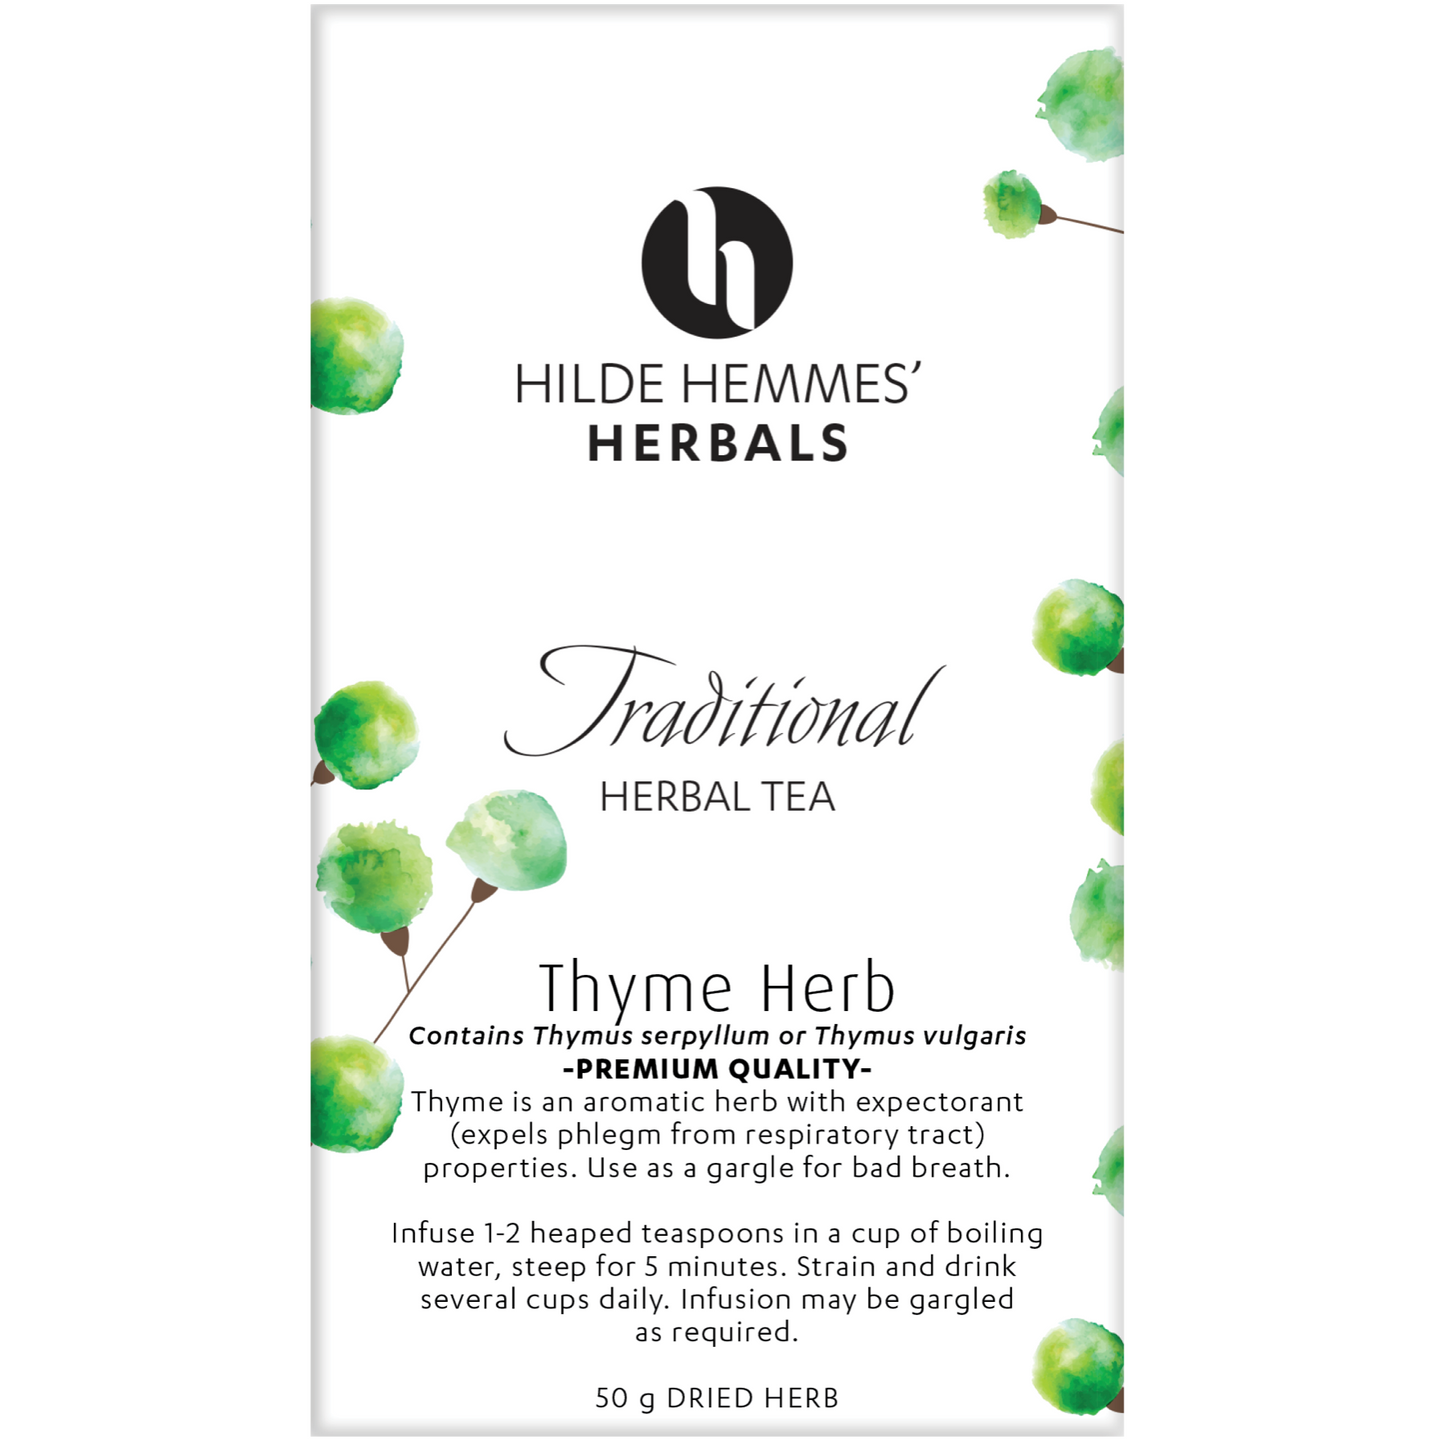 Hilde Hemmes Herbal's Tea 50g, Thyme (Loose Leaf)